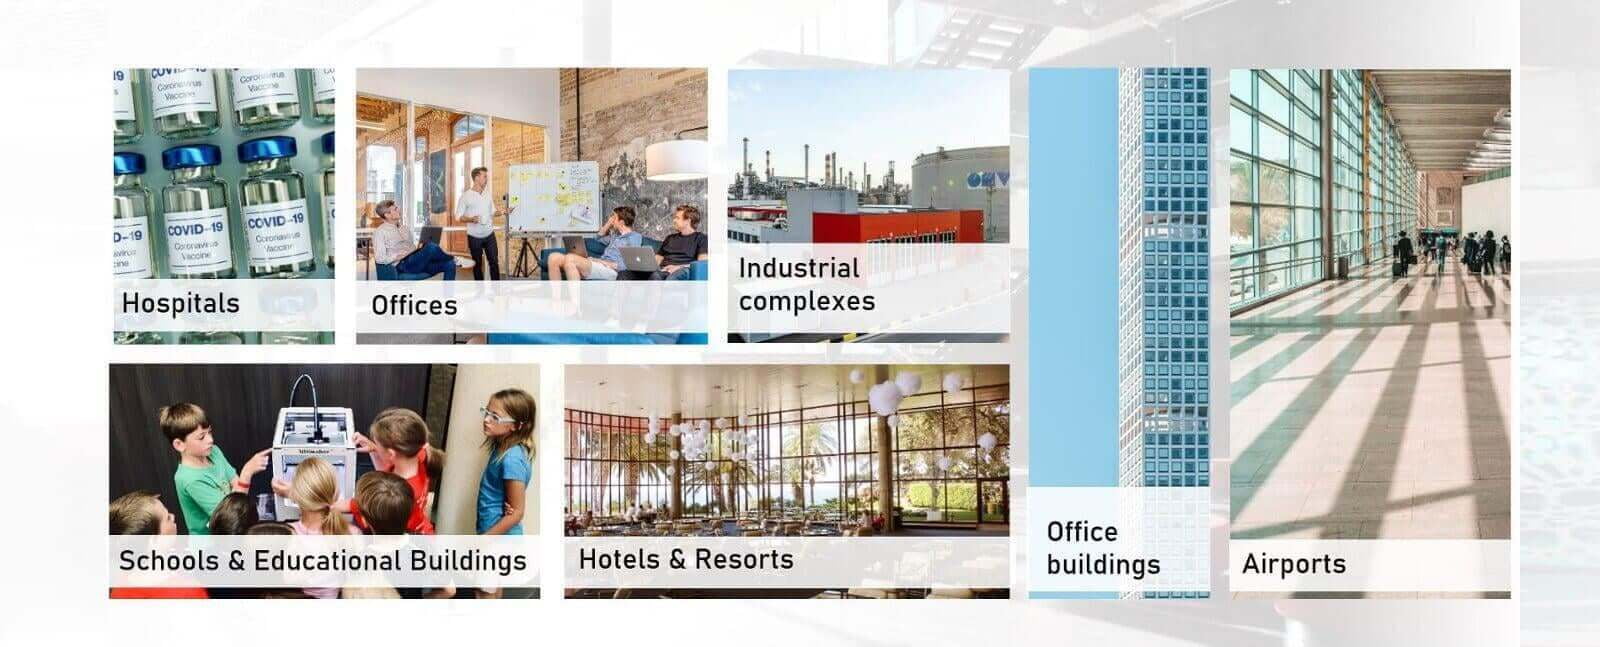 Las soluciones para edificios inteligentes son adecuadas para hospitales, oficinas, complejos industriales y fábricas, escuelas, hoteles y aeropuertos